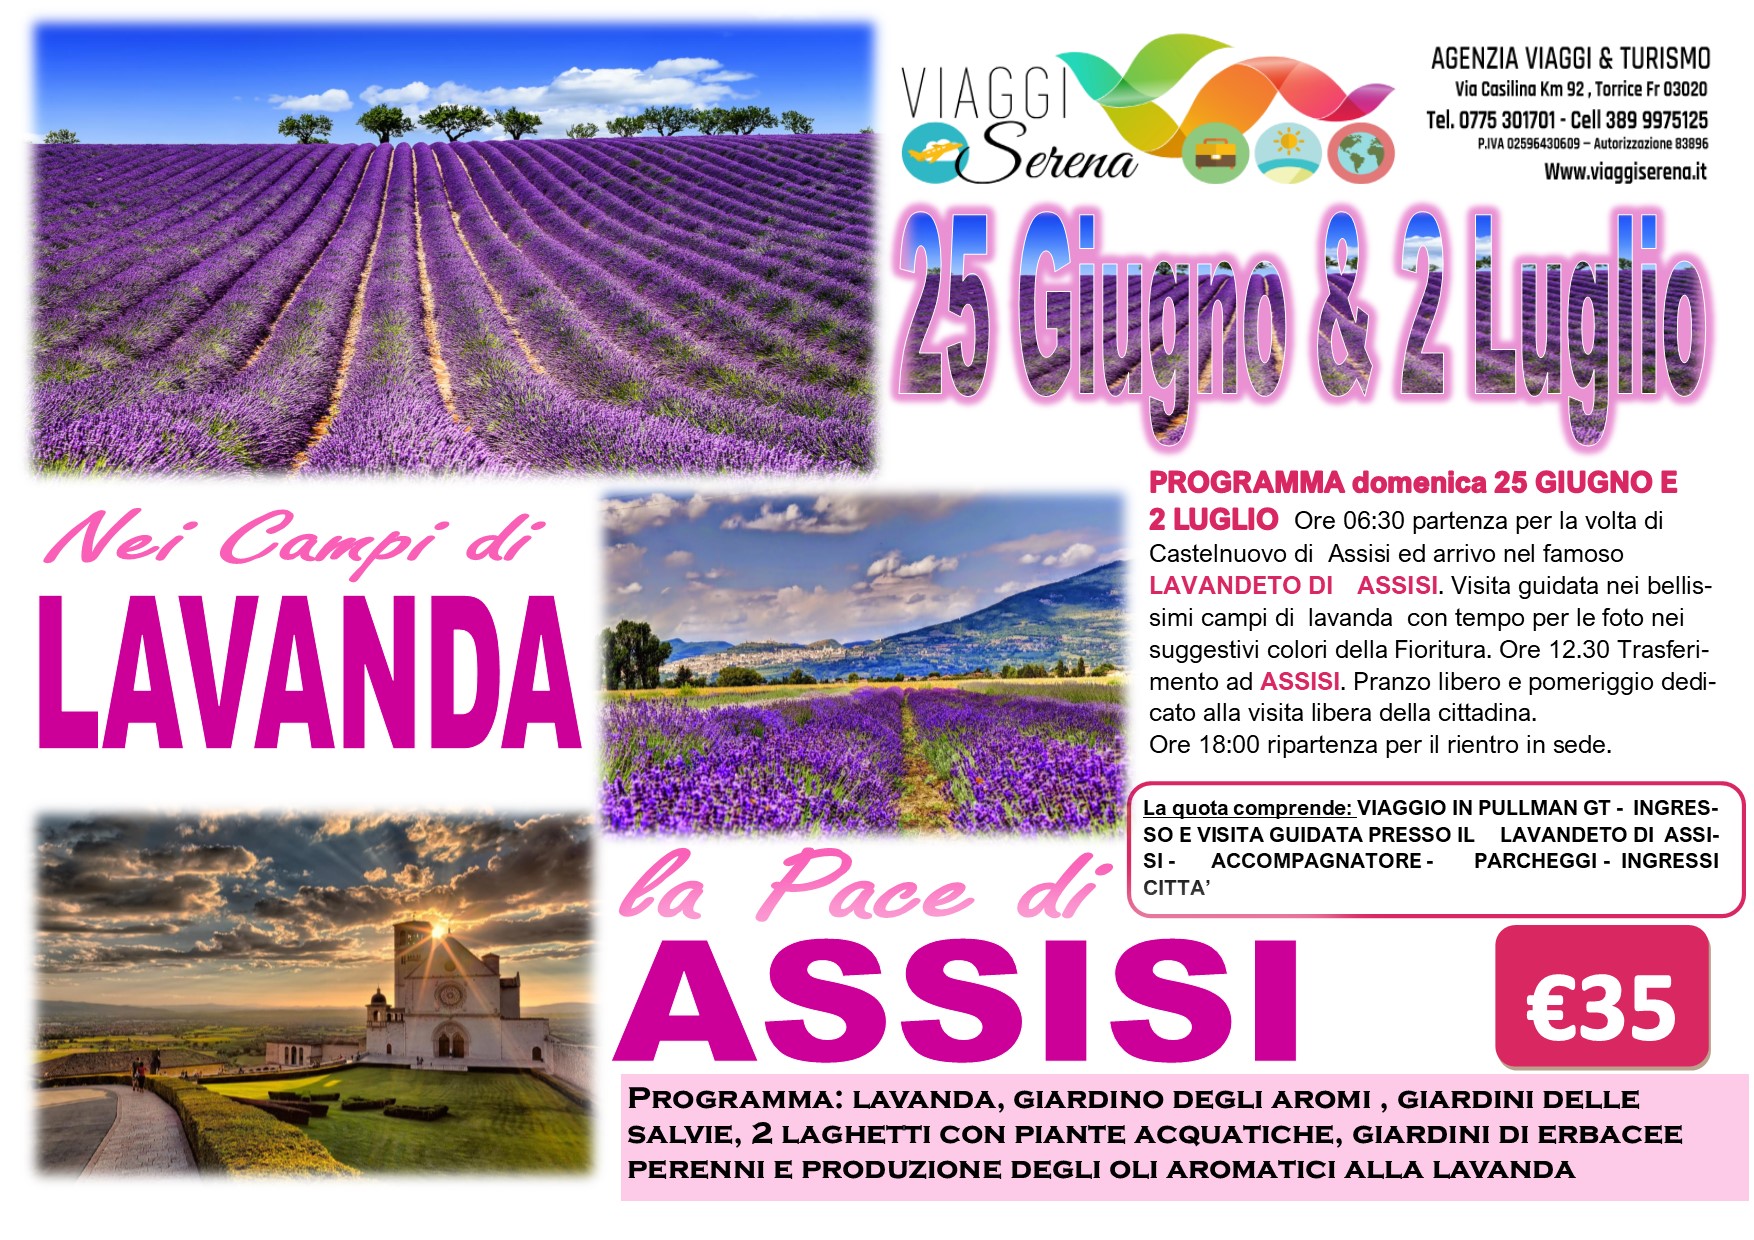 Viaggi di Gruppo: Lavanda “Lavandeto di Assisi” & Assisi 25 Giugno €35,00